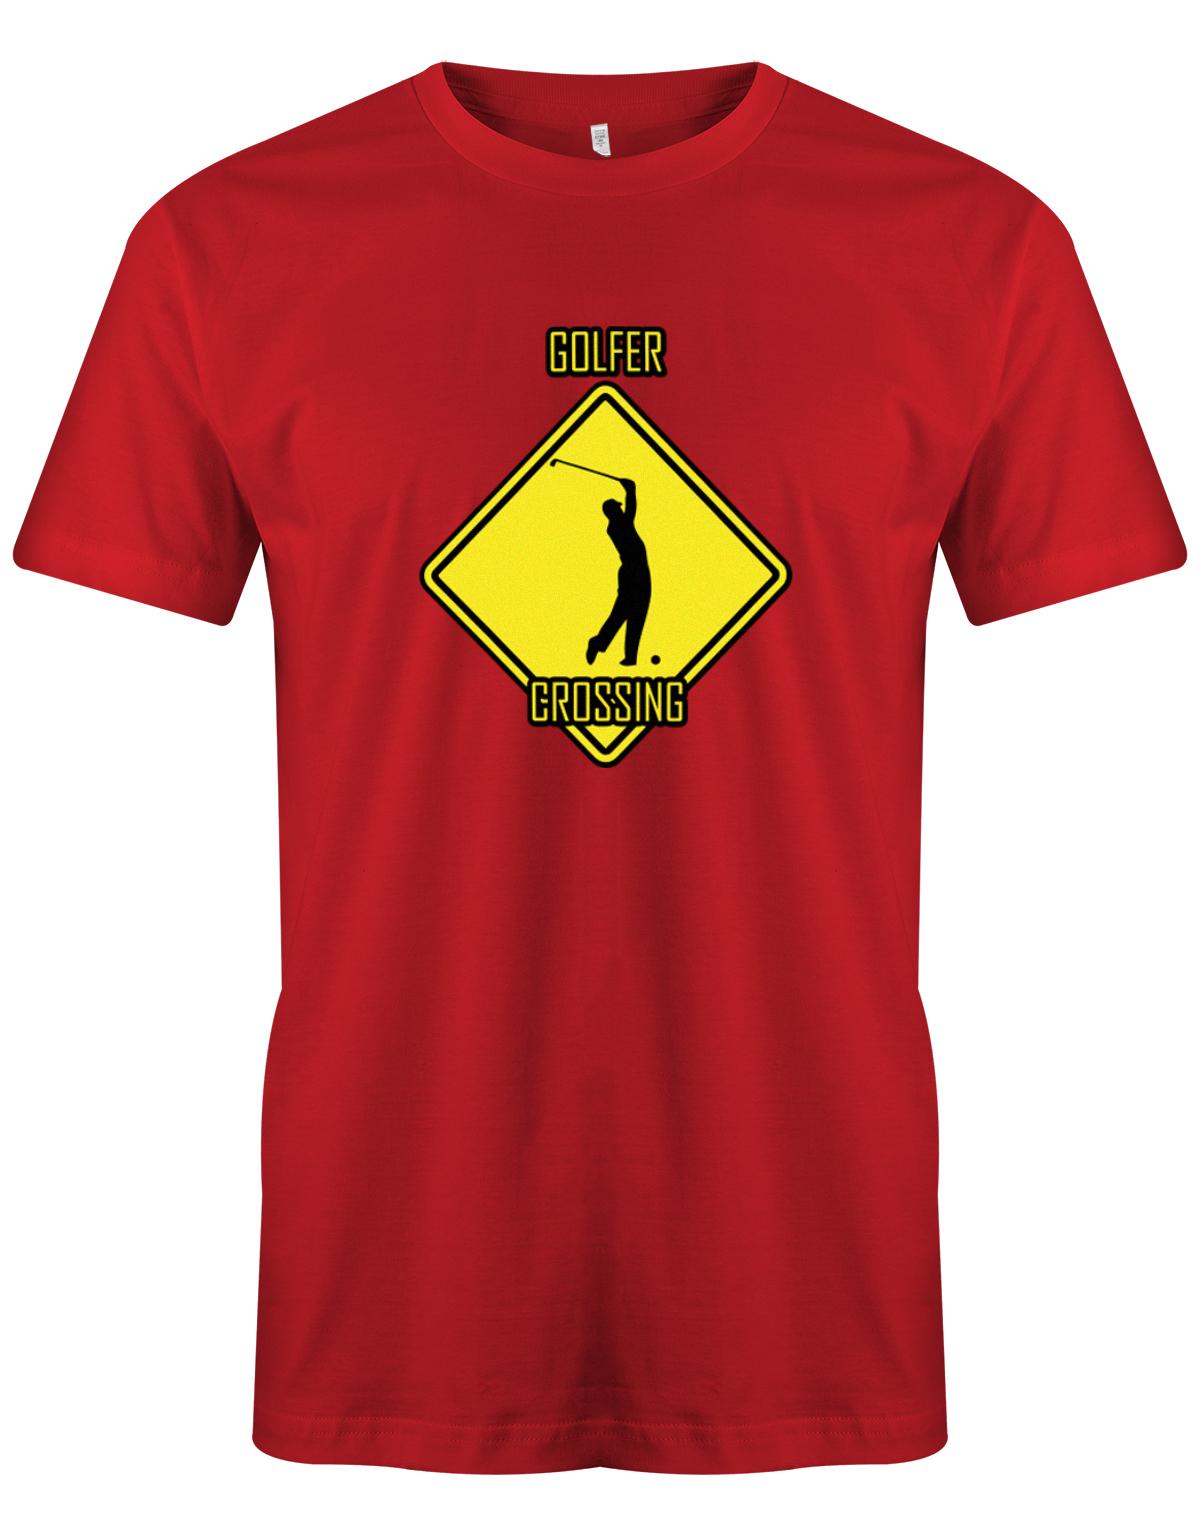 Golfer-Crossing-Herren-Shirt-Rot